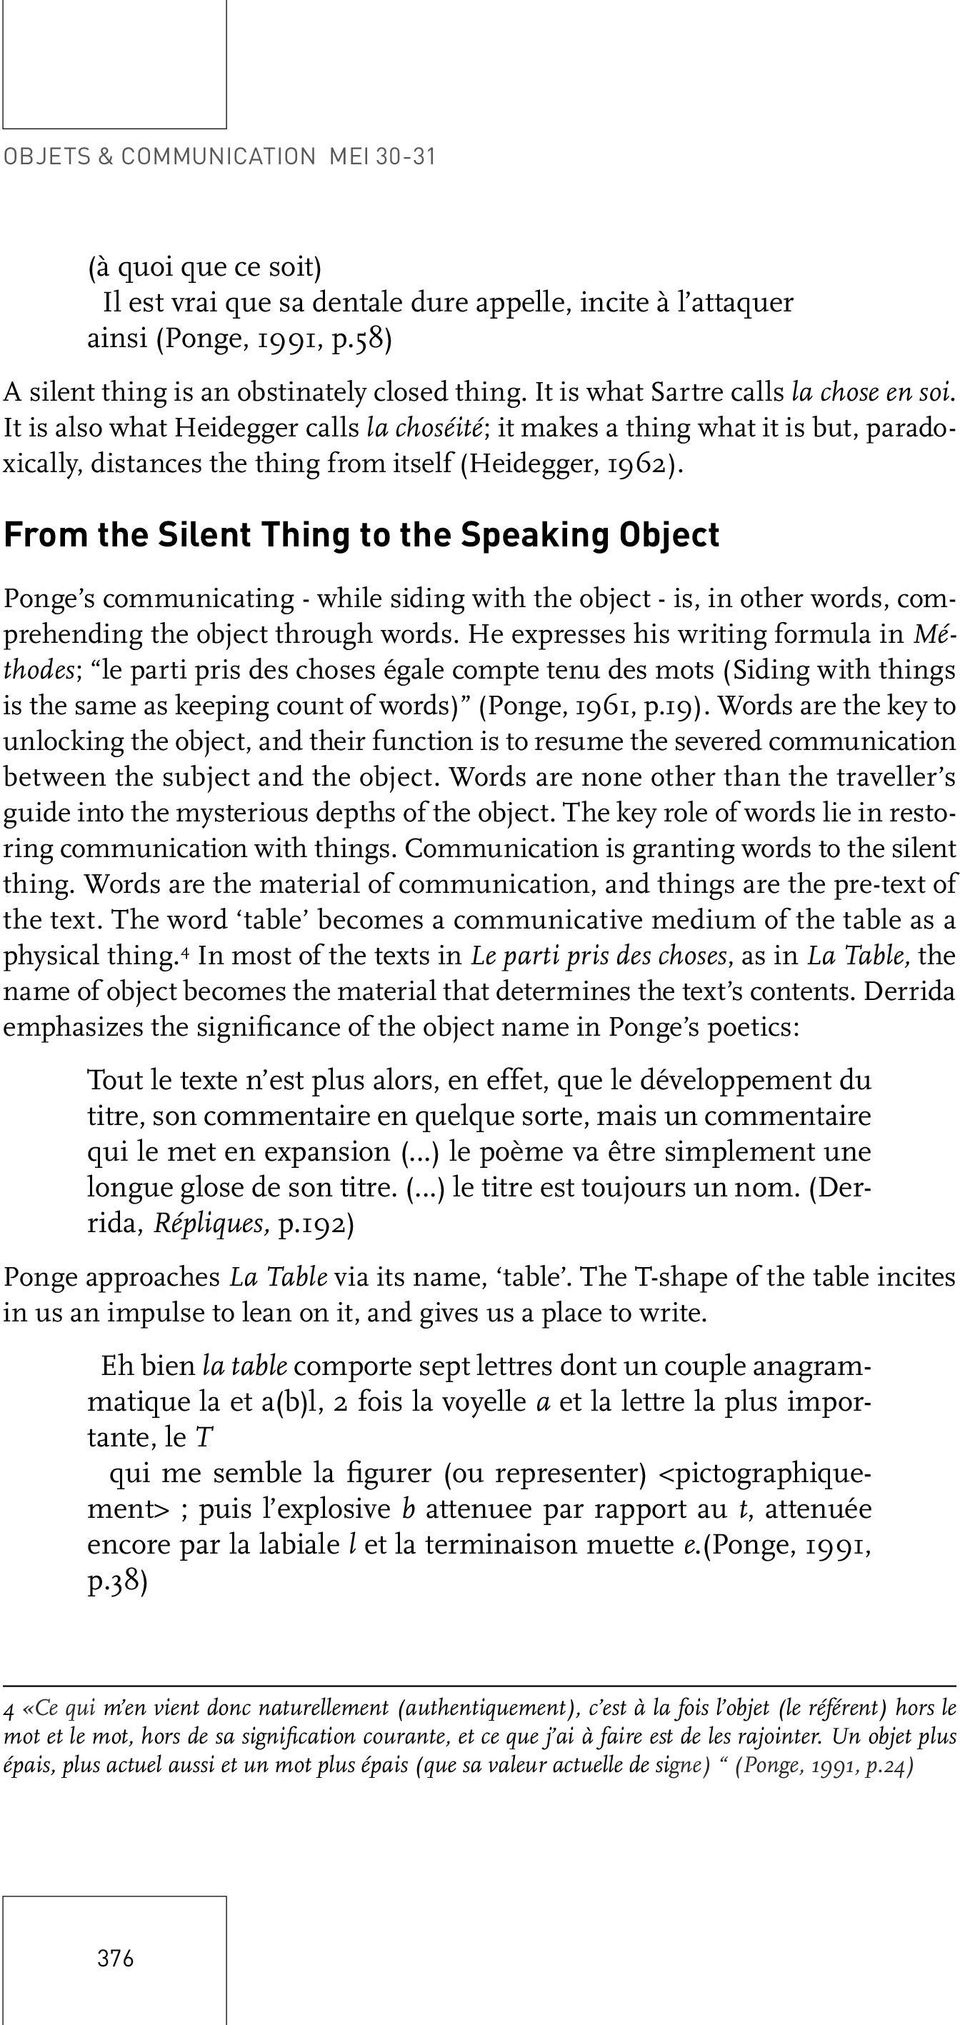 La Table Qui Désire La Communication. Ponge And The Object concernant 4 Images Et Un Mot 